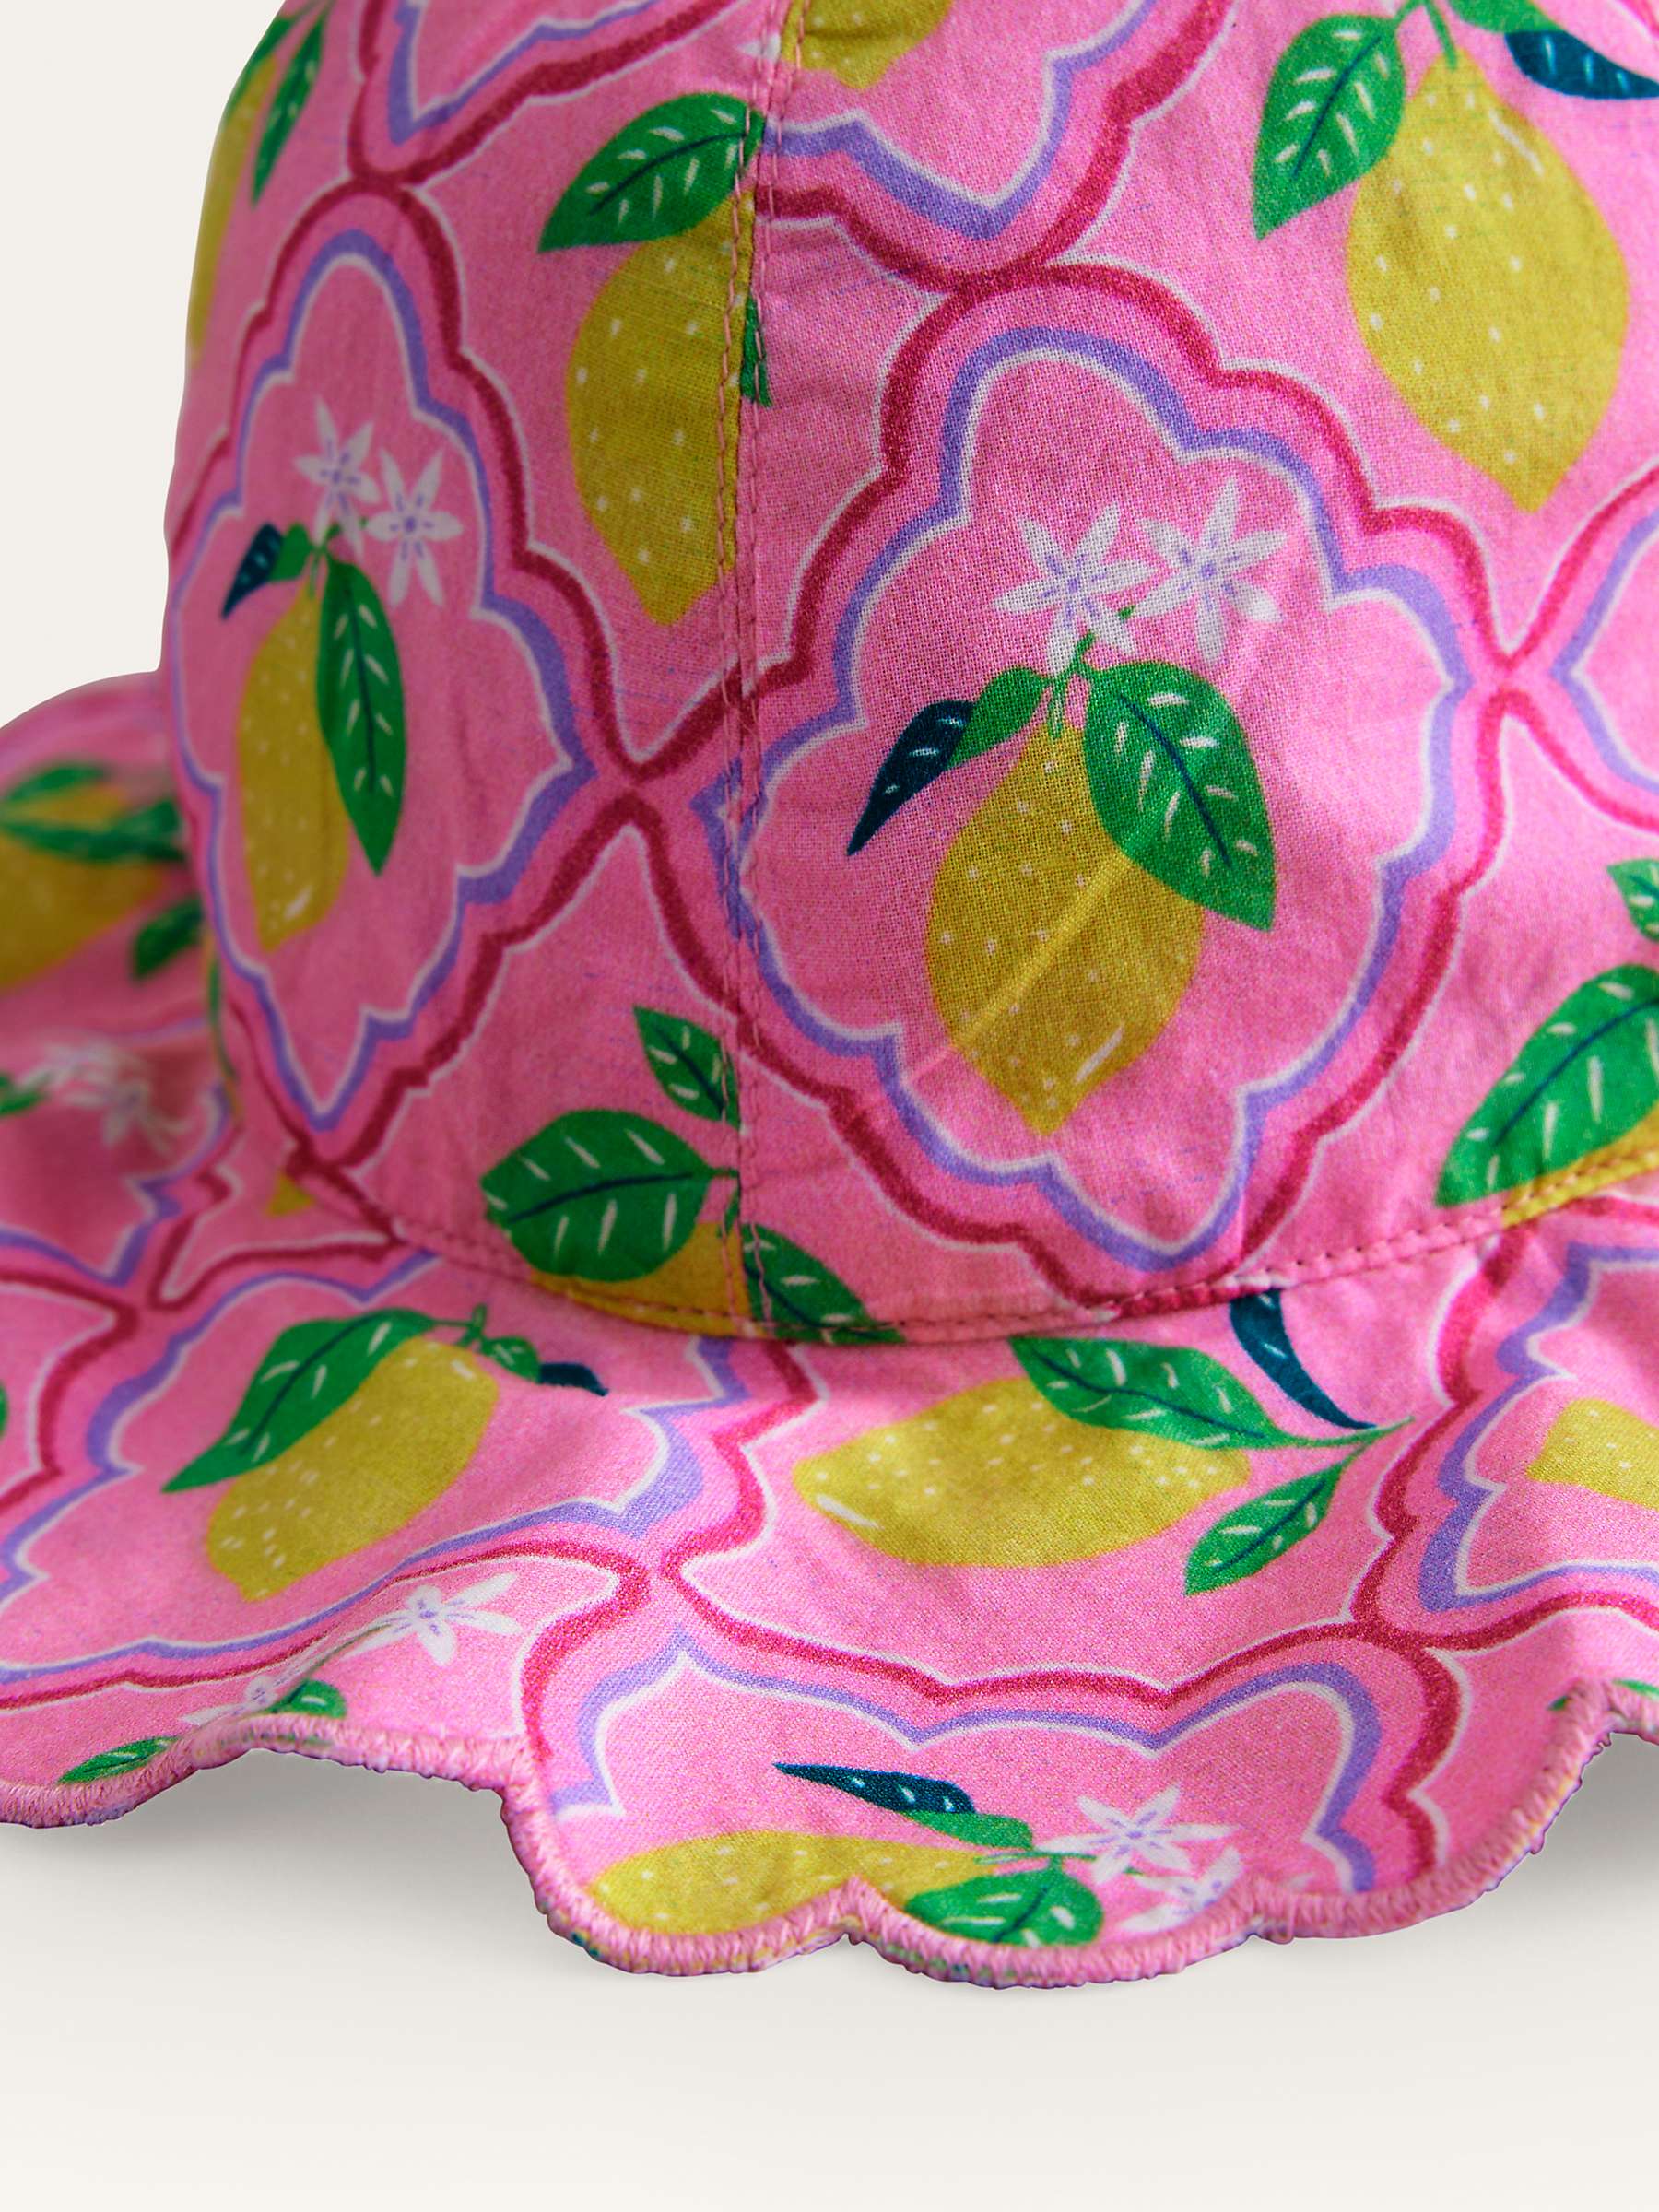 Buy Mini Boden Kids' Wide Brimmed Lemon Print Hat, Pink Lemon Grove Online at johnlewis.com